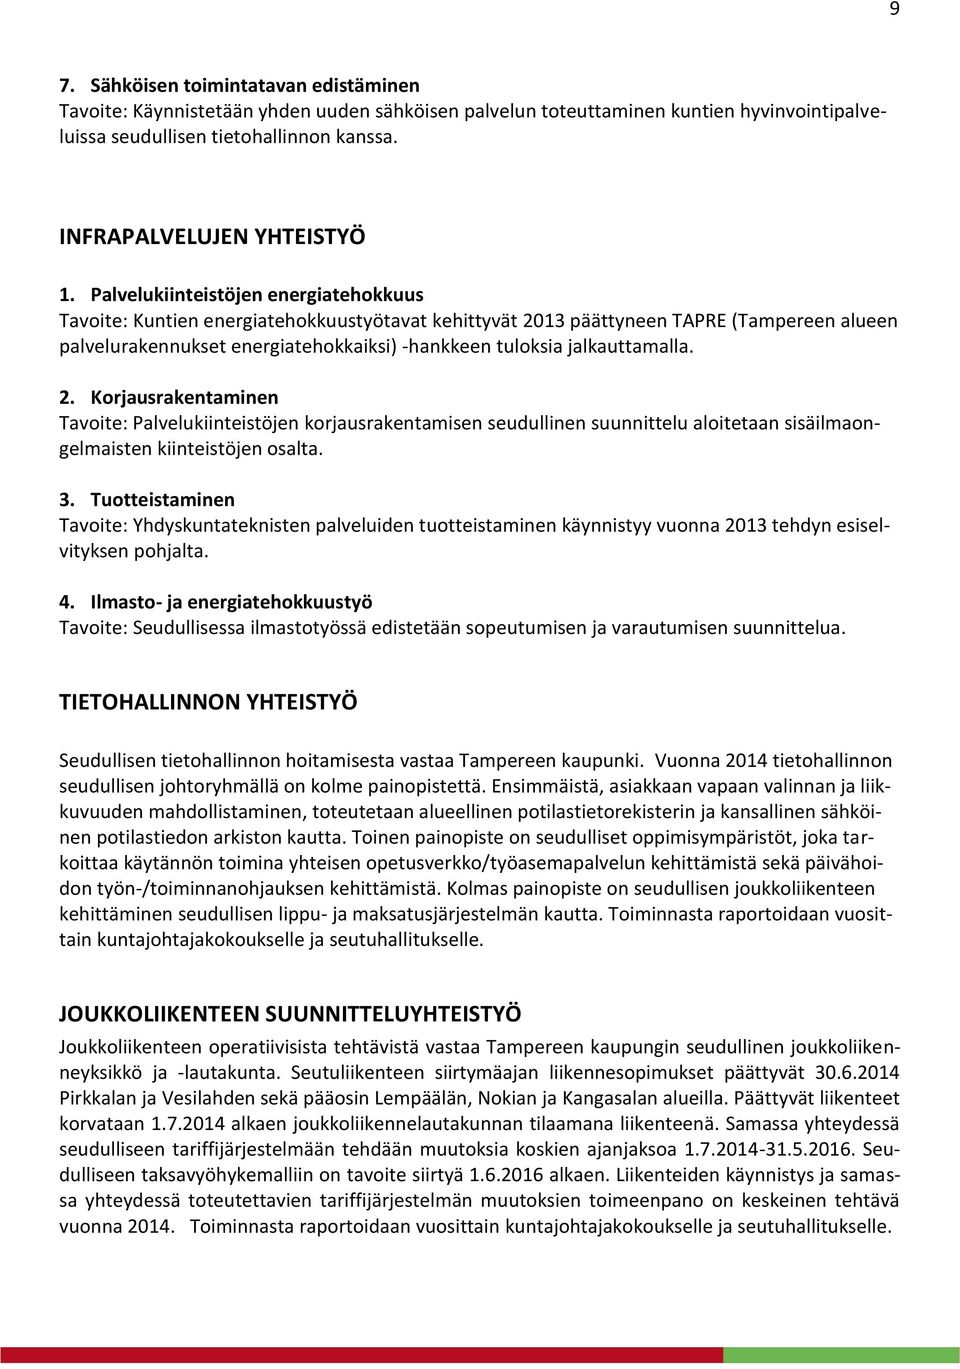 Palvelukiinteistöjen energiatehokkuus Tavoite: Kuntien energiatehokkuustyötavat kehittyvät 2013 päättyneen TAPRE (Tampereen alueen palvelurakennukset energiatehokkaiksi) -hankkeen tuloksia